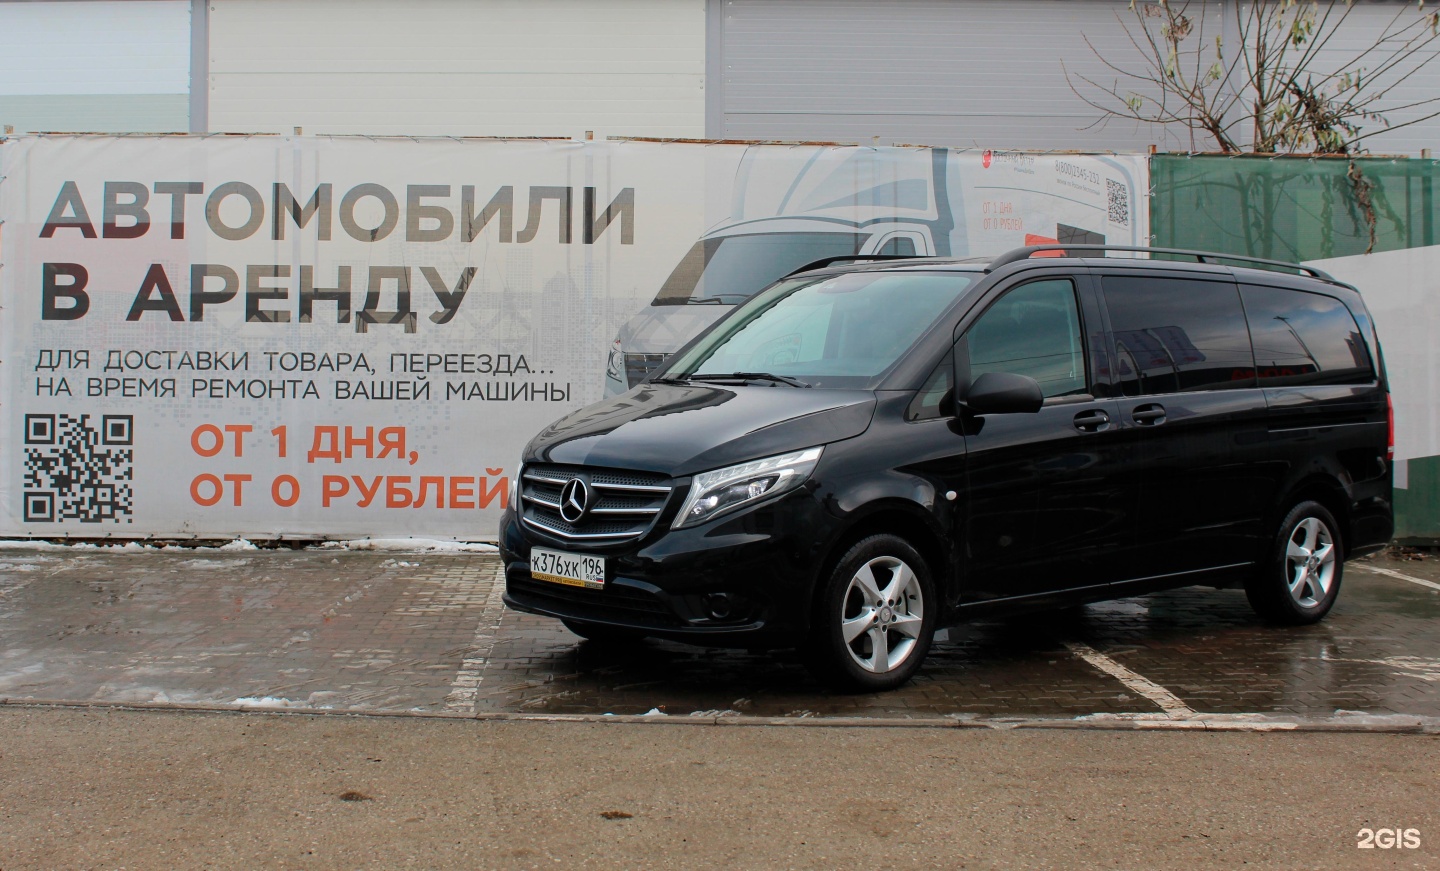 Аренда без водителя в калининграде недорого. Взять Мерседес напрокат Екатеринбург без водителя.